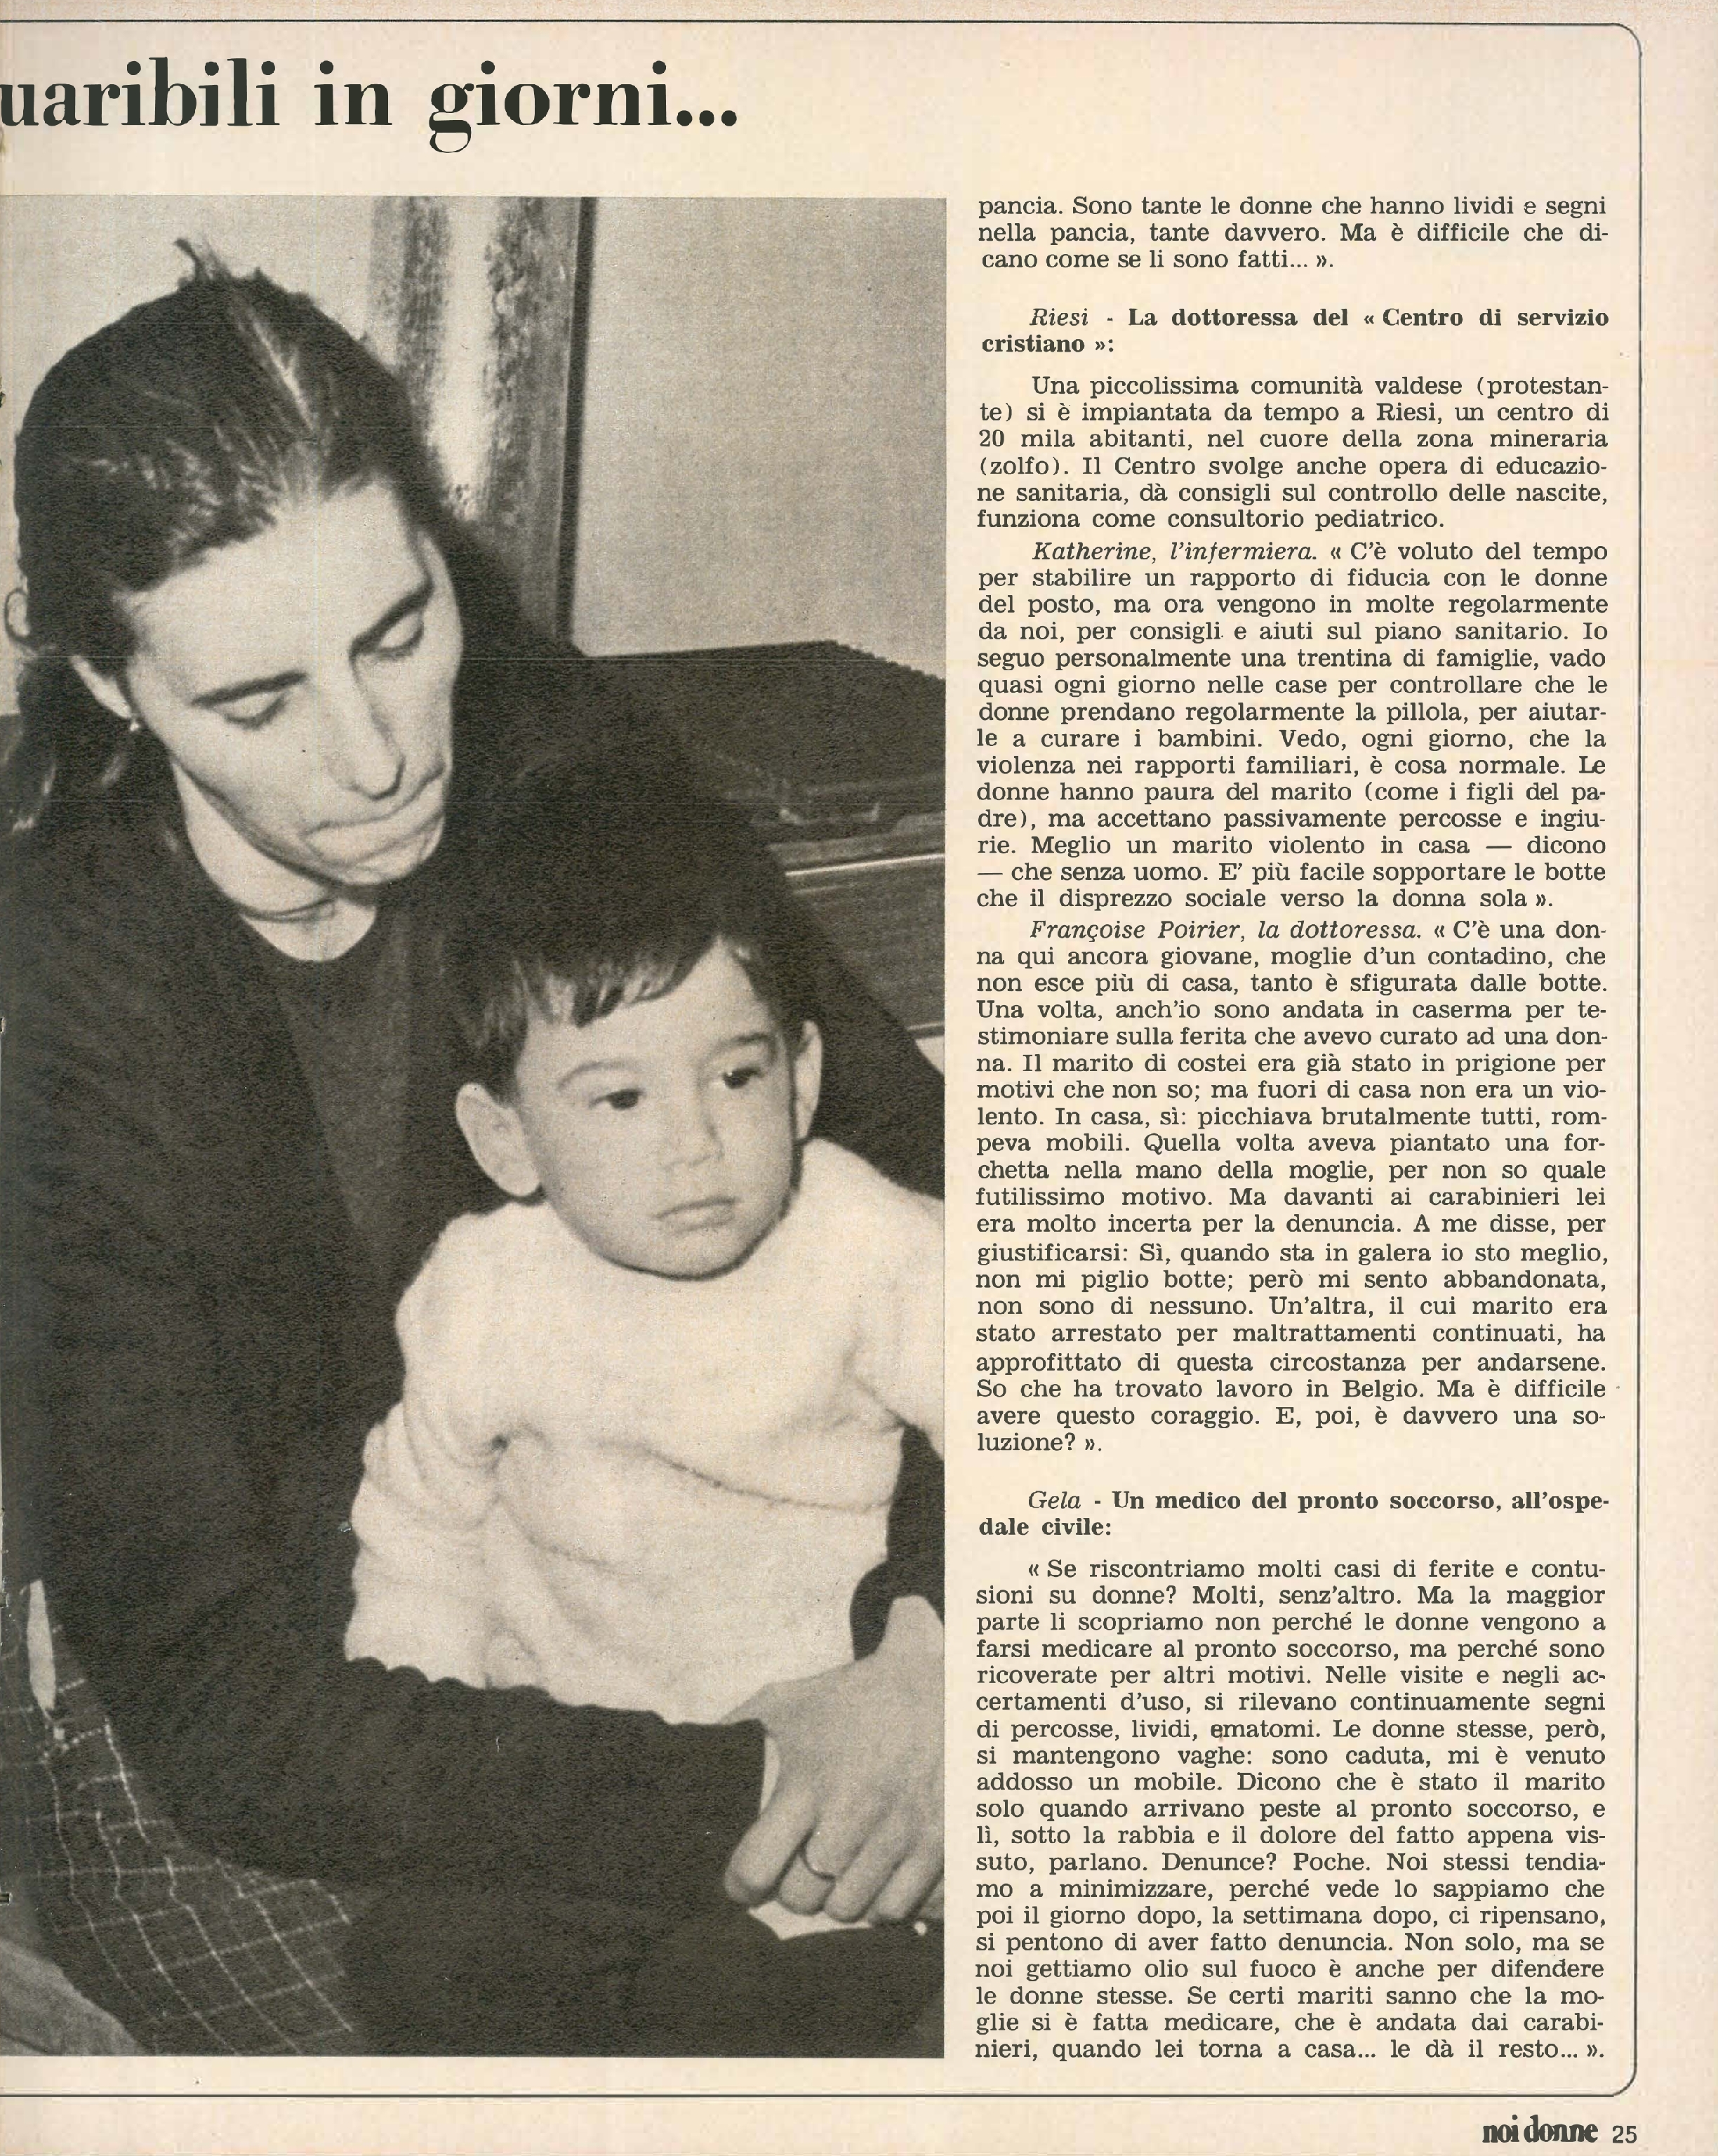 Foto: Appello di Hortensia Allende alle donne